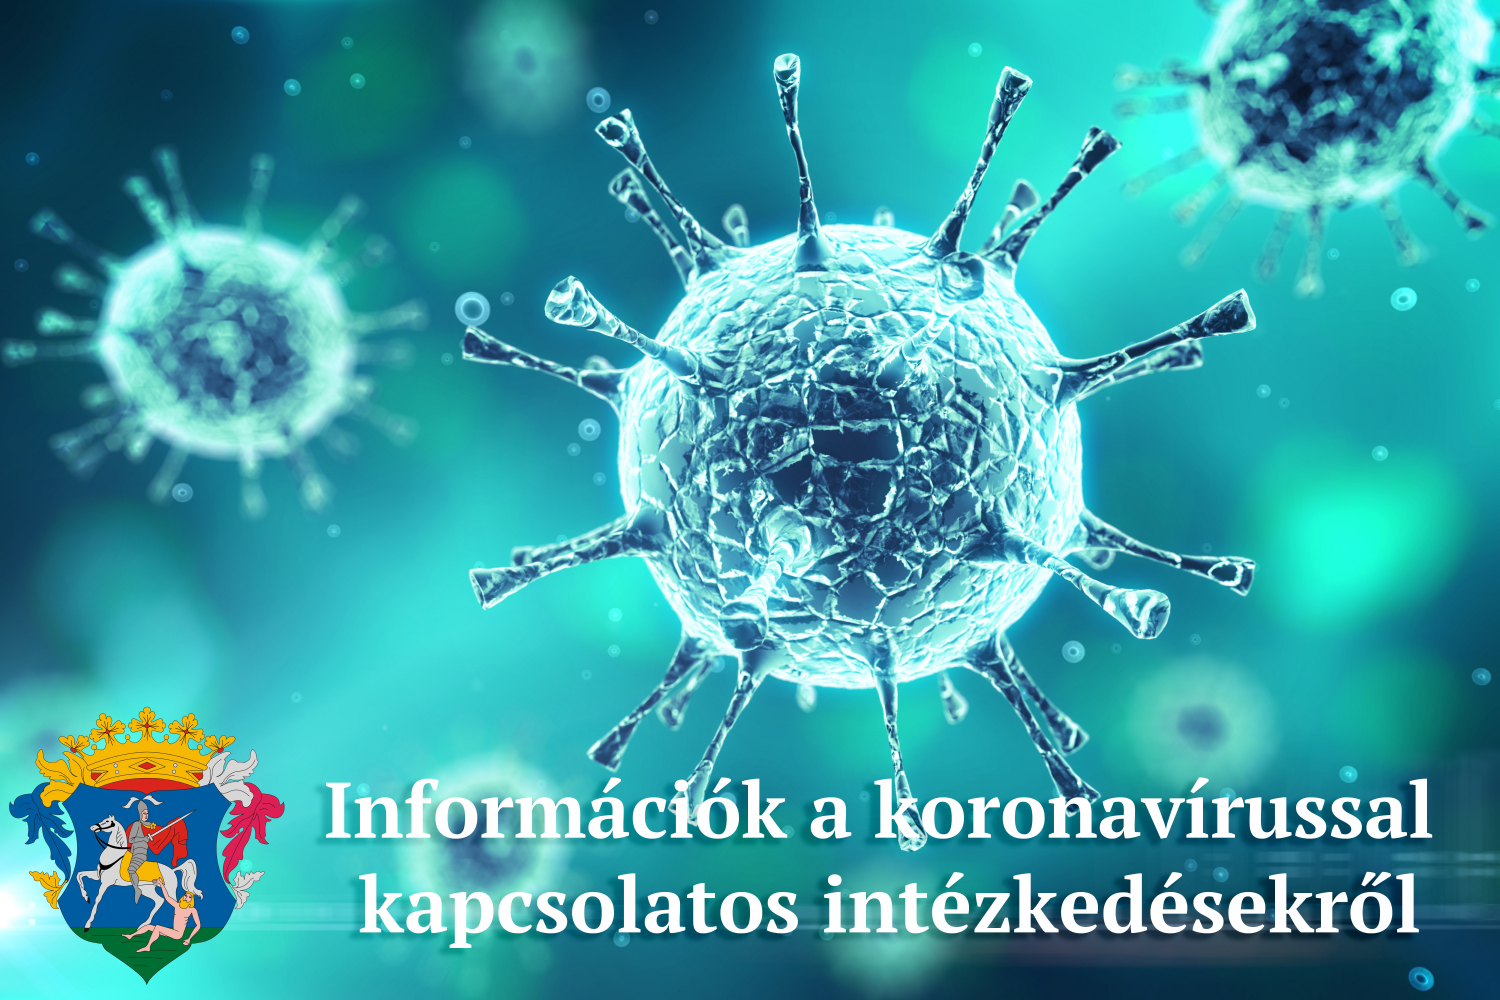 információk a koronavírussal kapcsolatos intézkedésekről, döntésekről 2020. december 7 - december 10 között